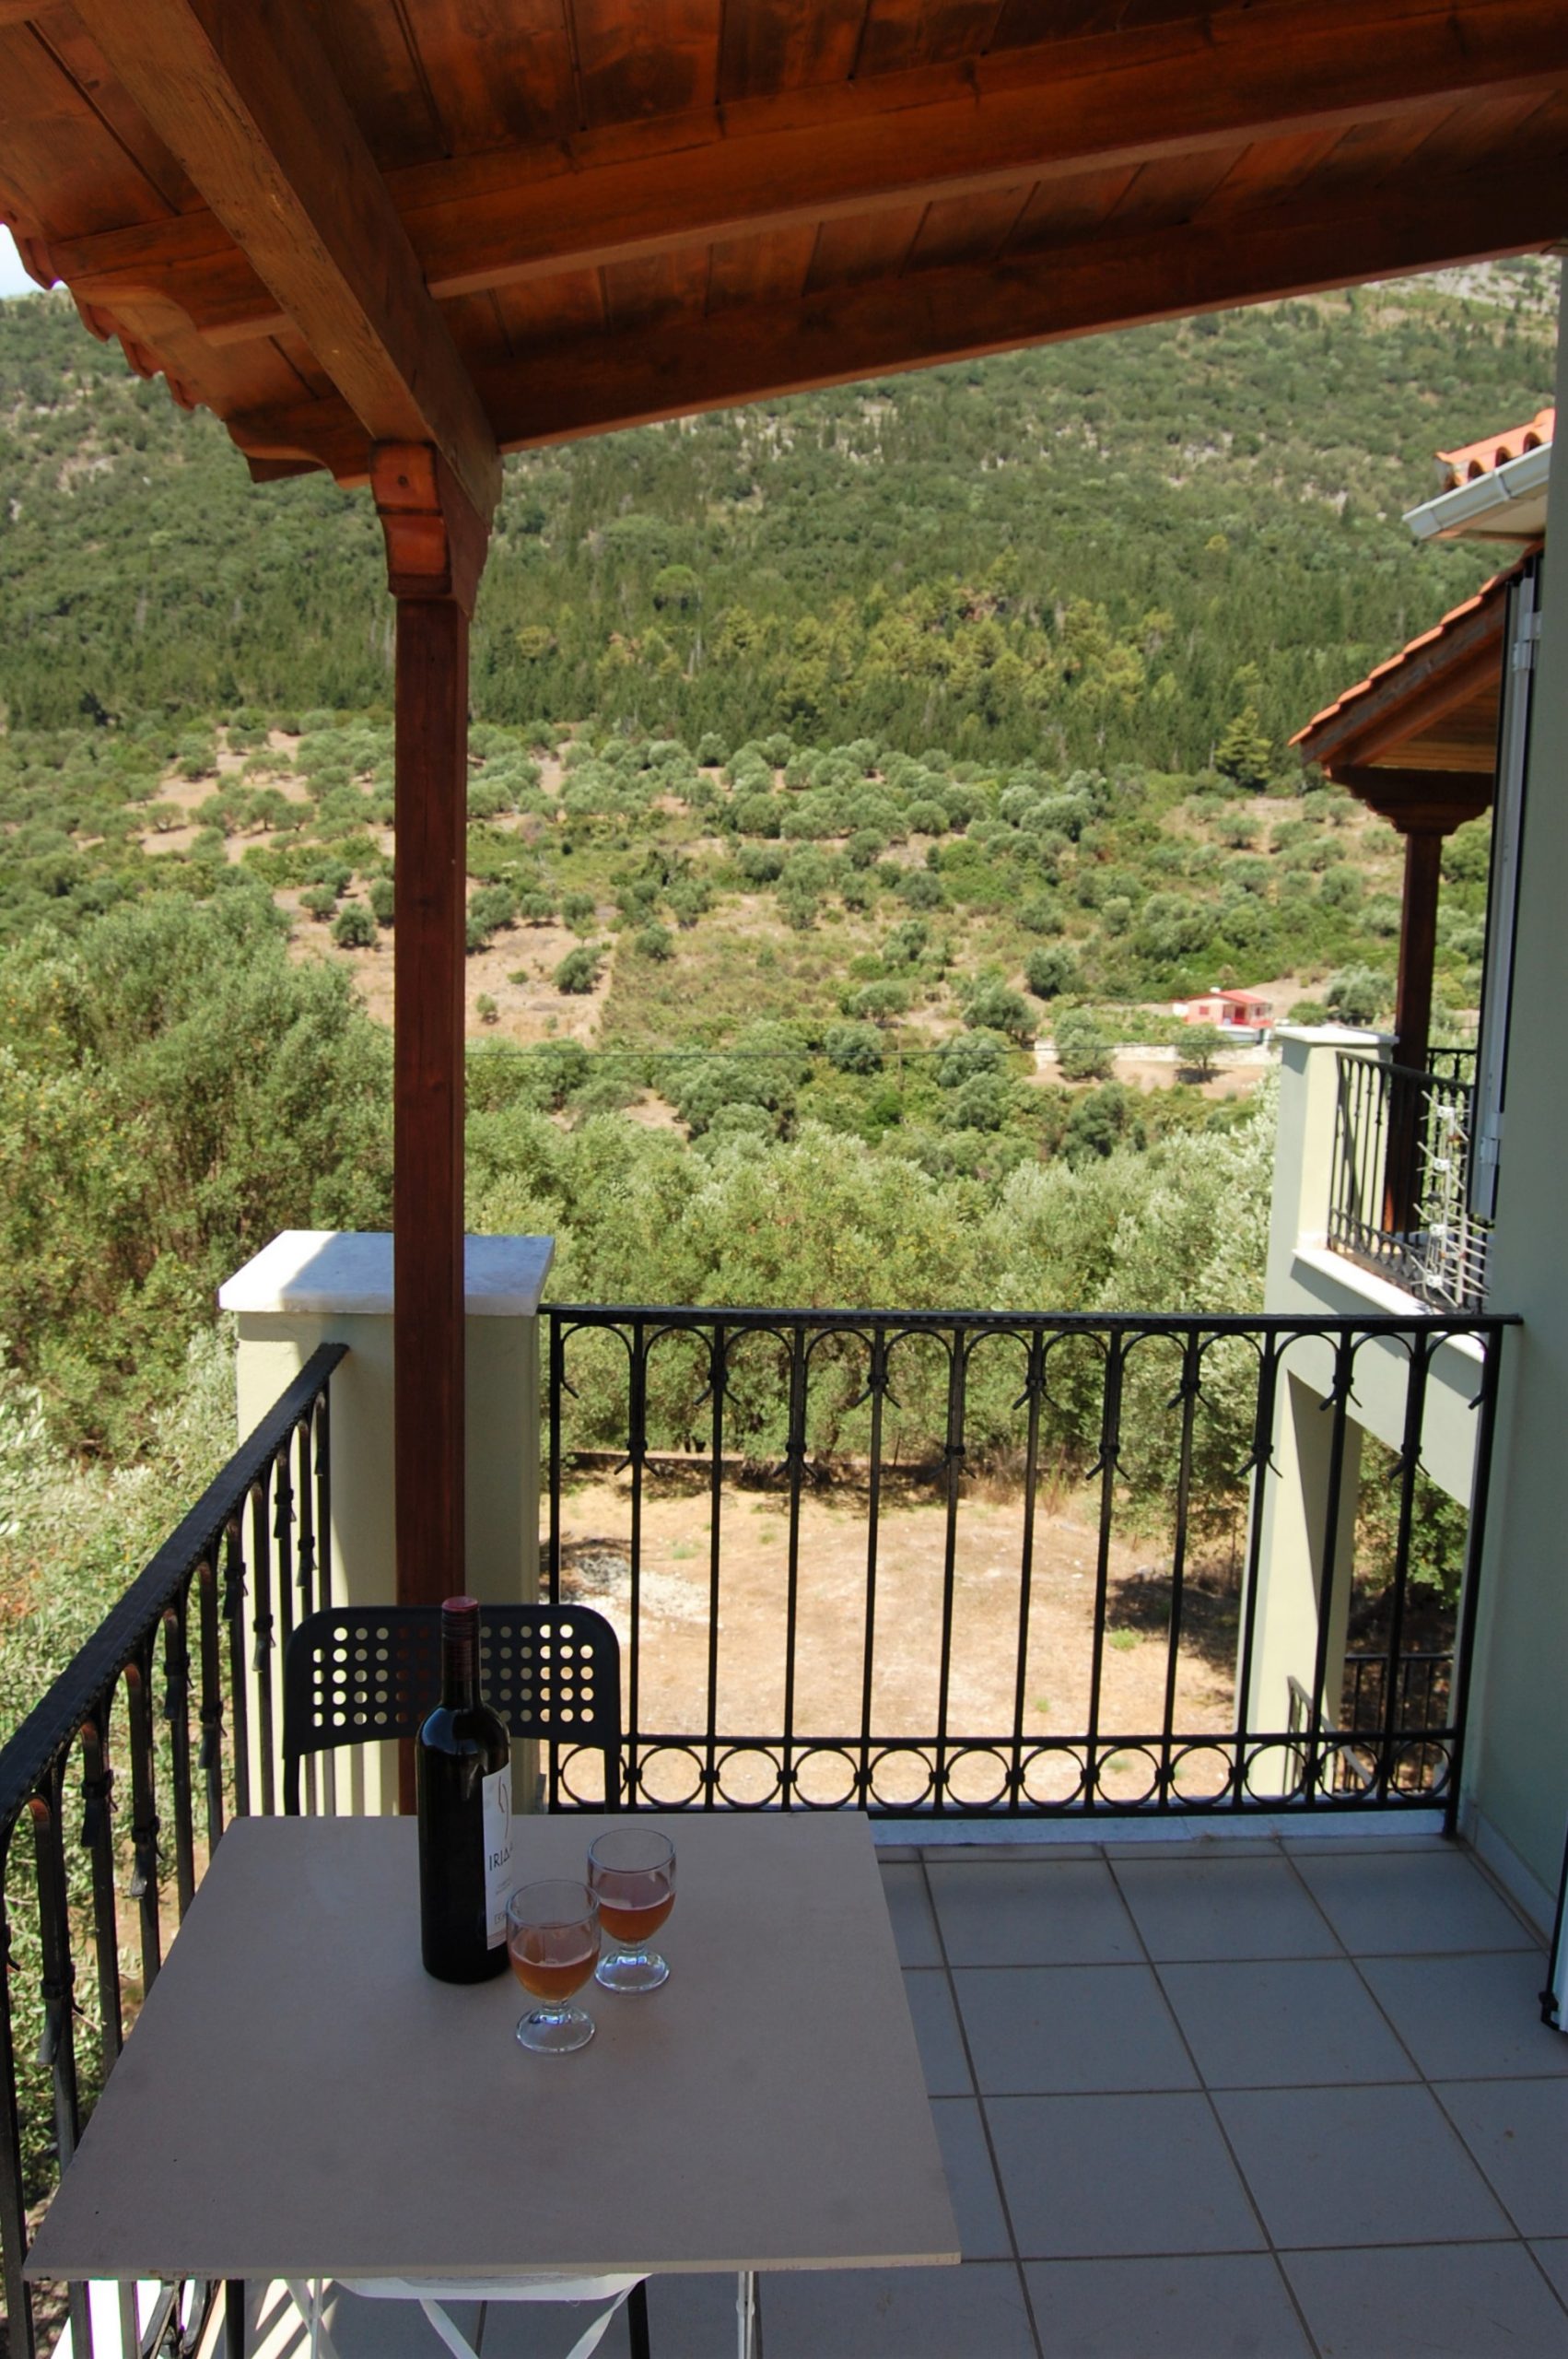 Μπαλκόνι και θέα στο ενοικιαζόμενο σπίτι στην Ιθάκα Ελλάδας Σταύρος